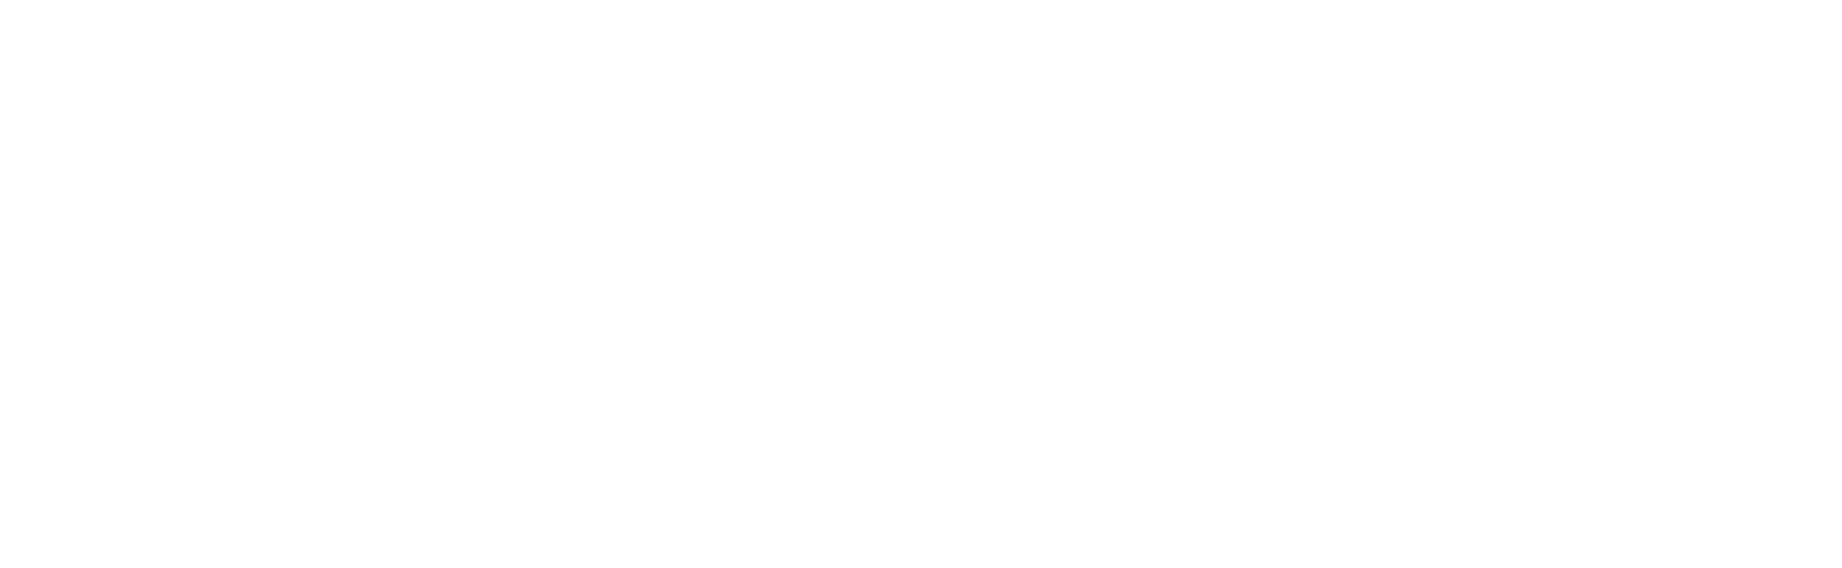 olivia logo white